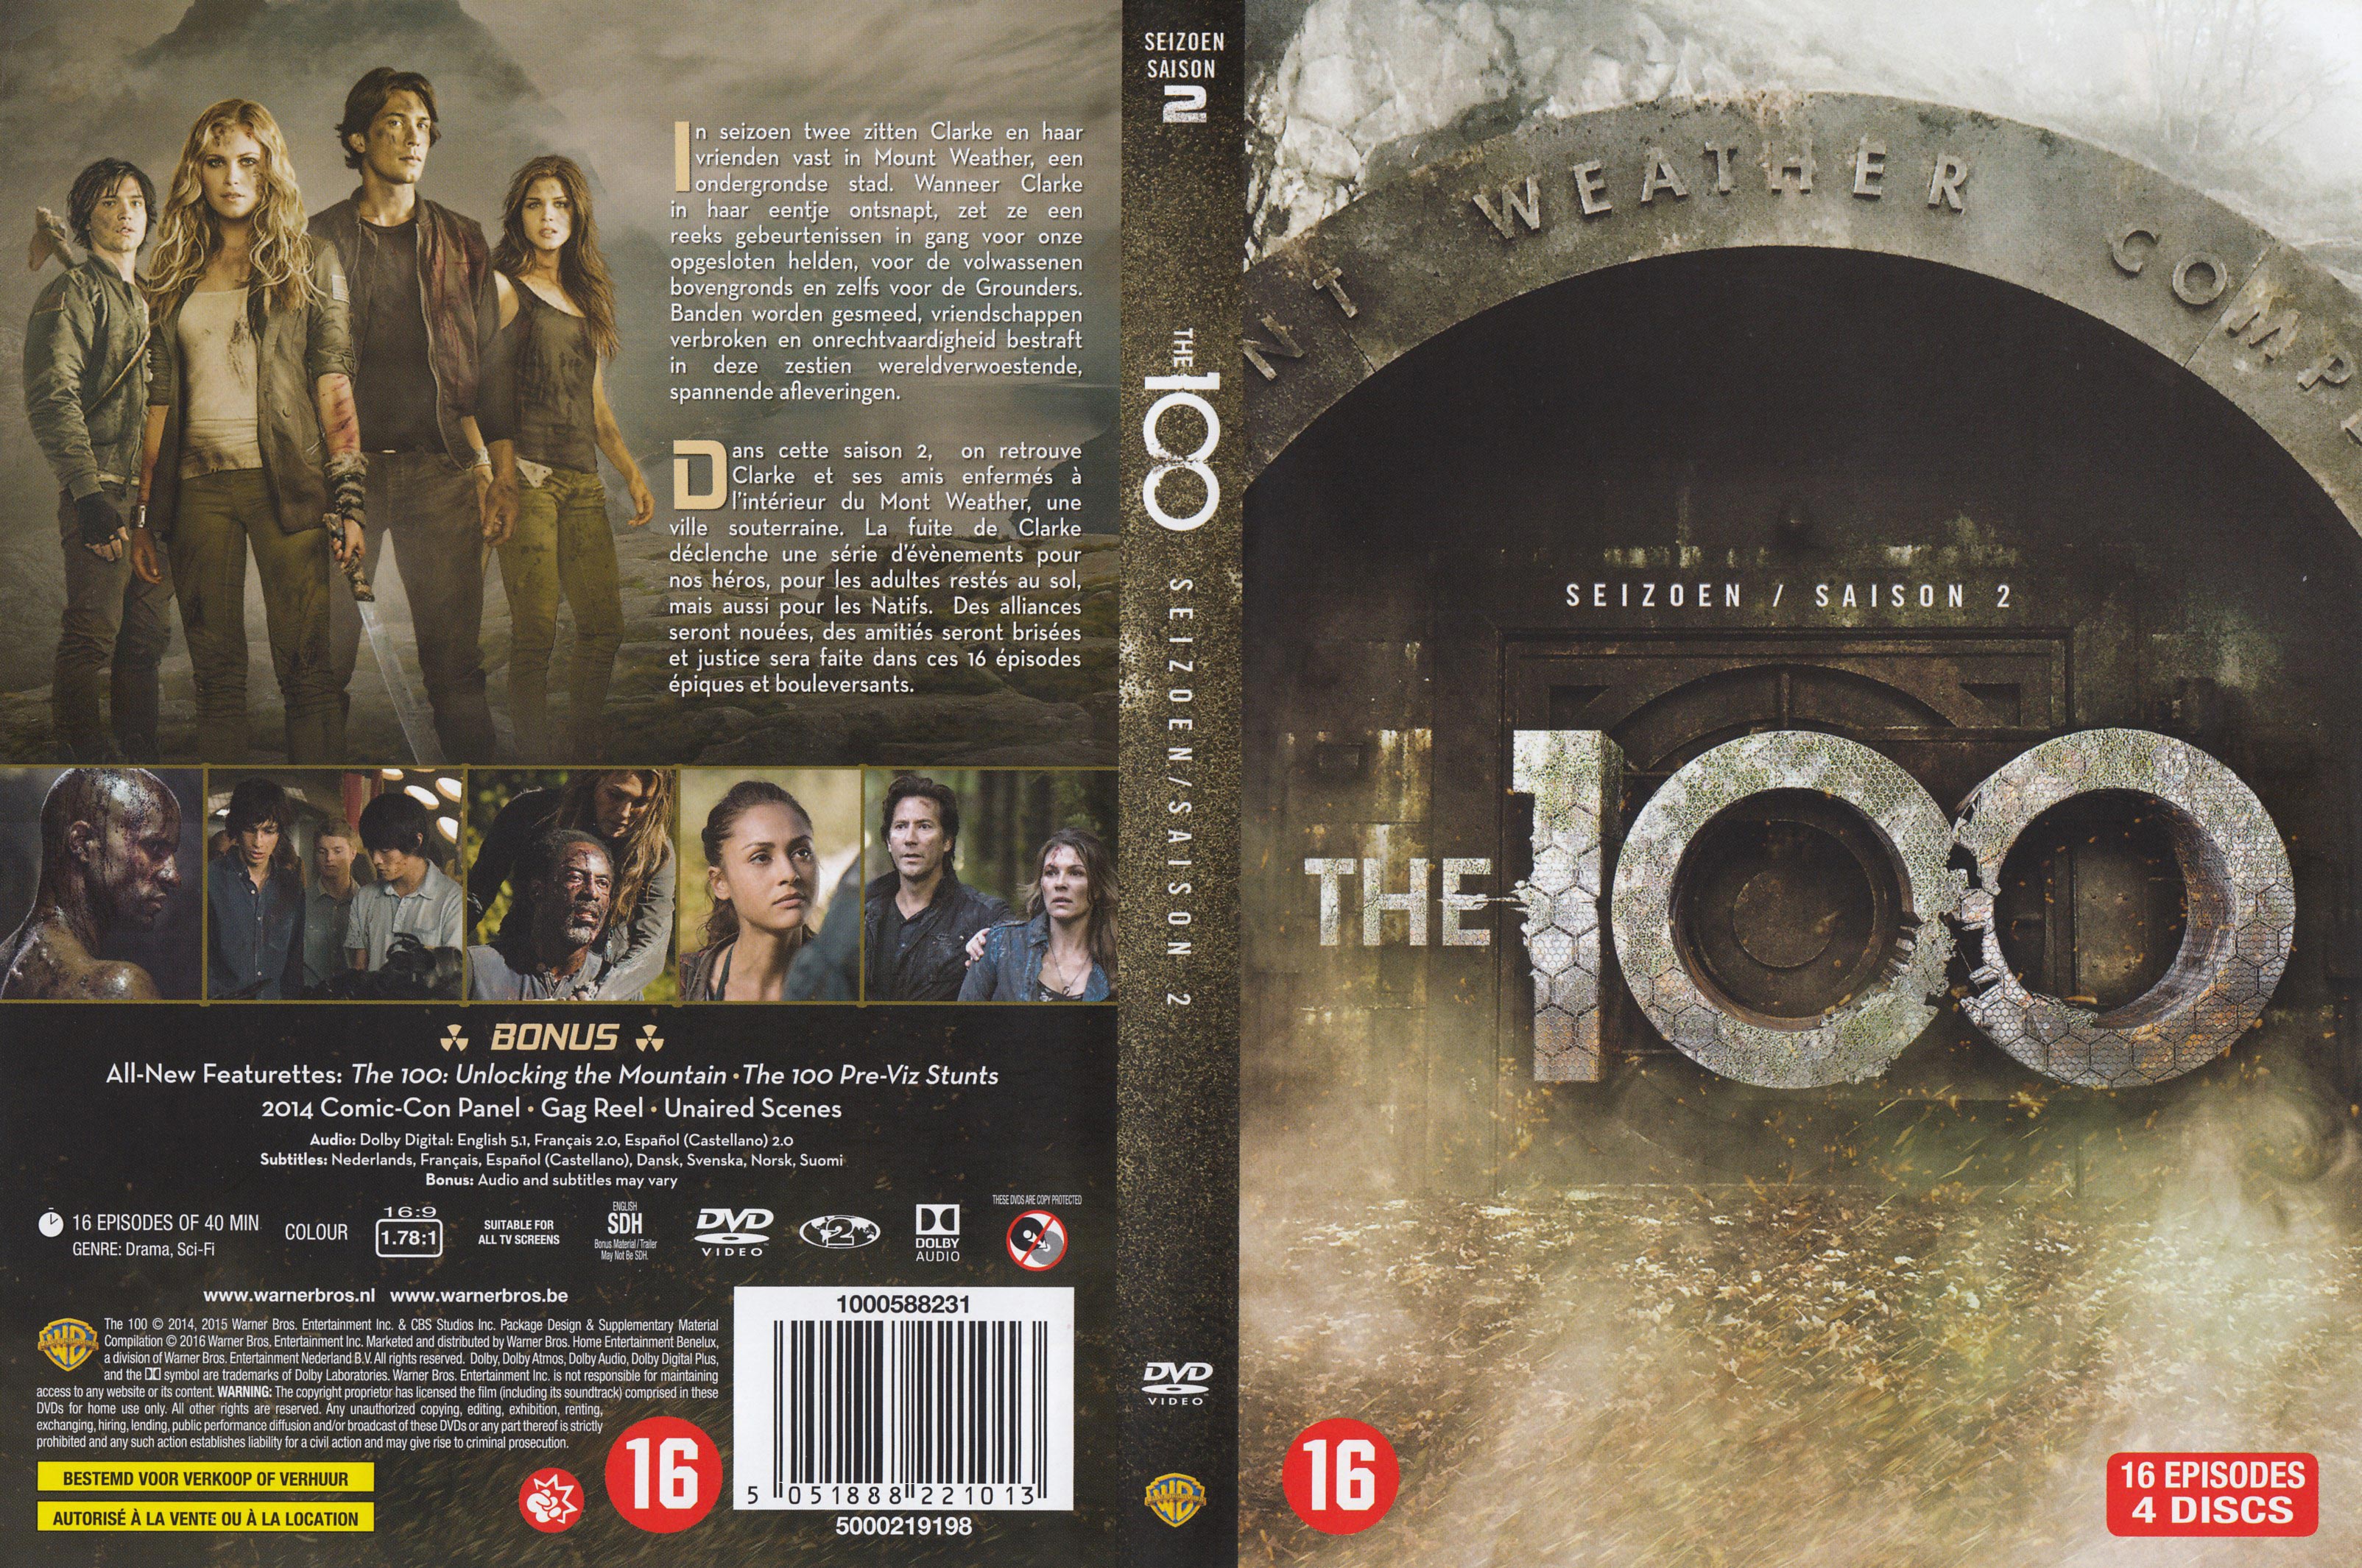 Jaquette DVD The 100 Saison 2